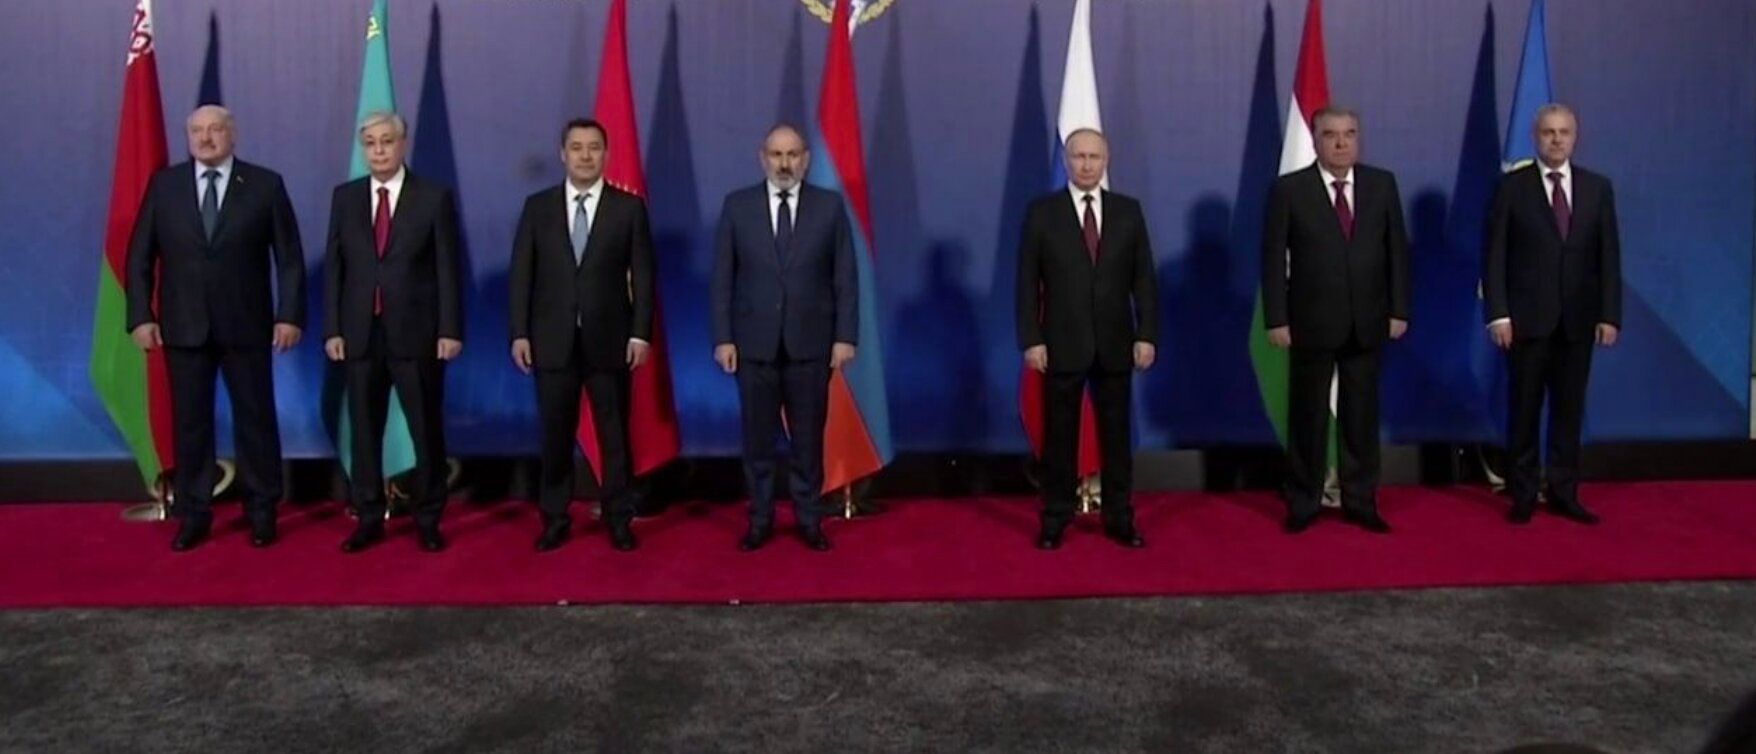 Лидеры ОДКБ отстранились от Путина на общем фото